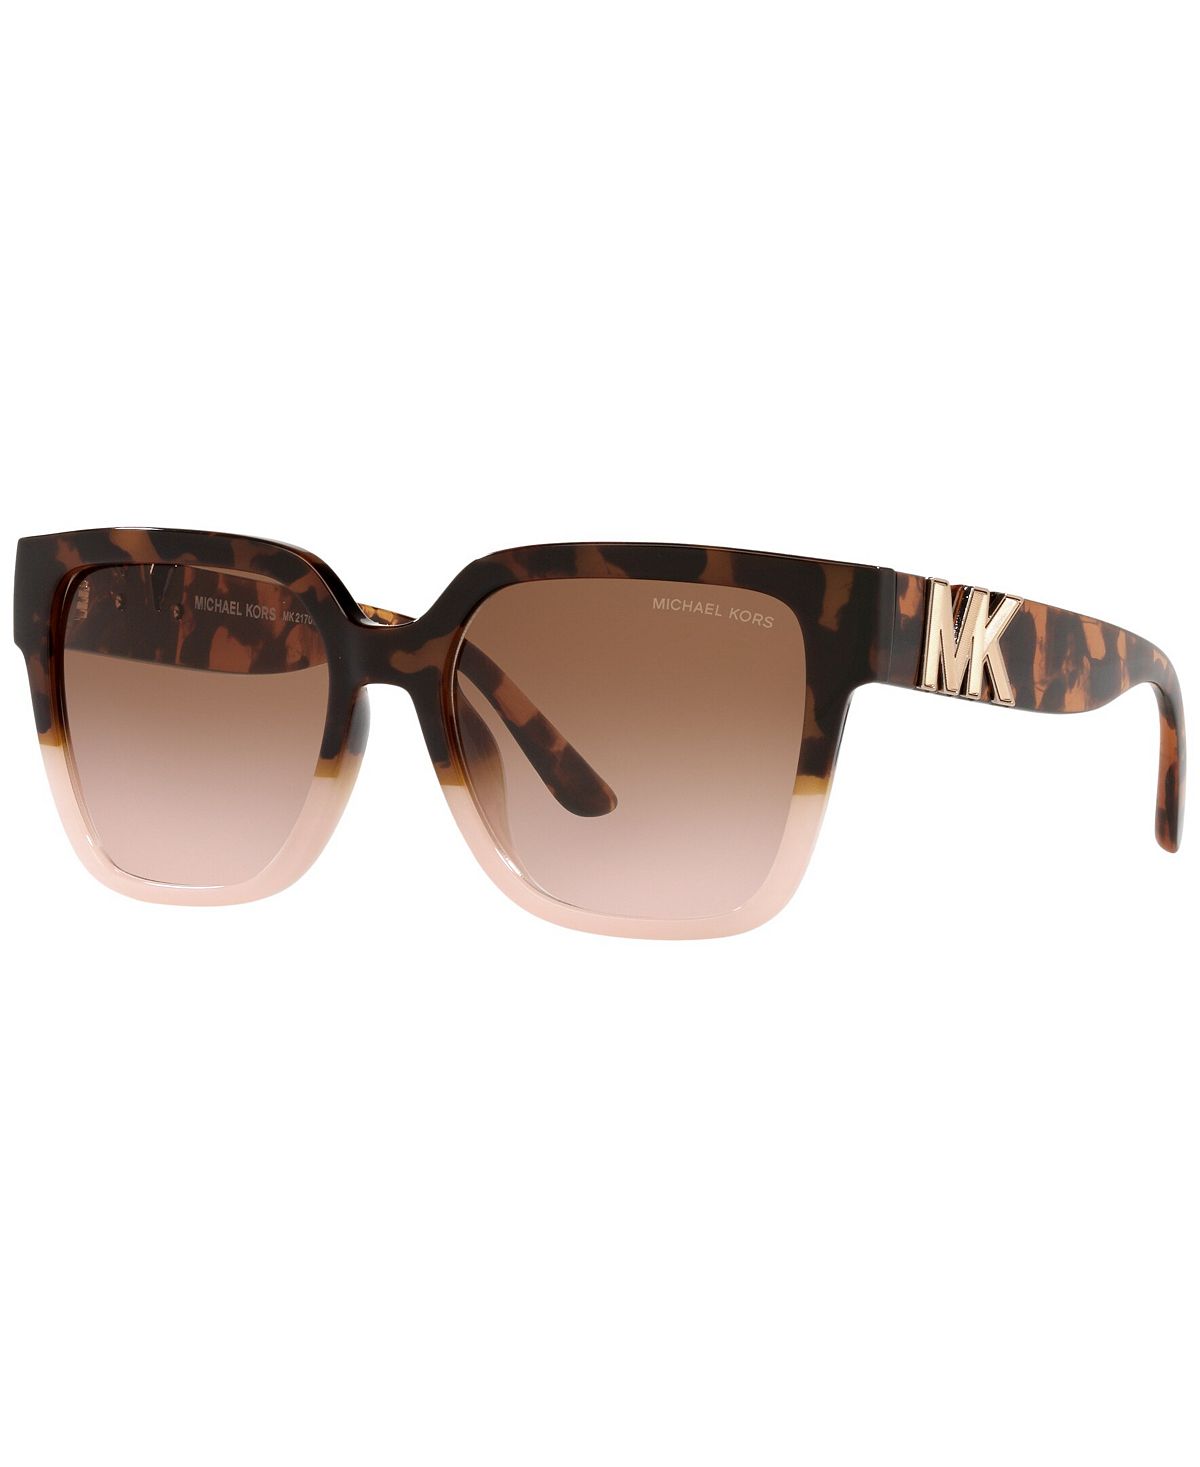 Женские солнцезащитные очки Karlie 54 Michael Kors